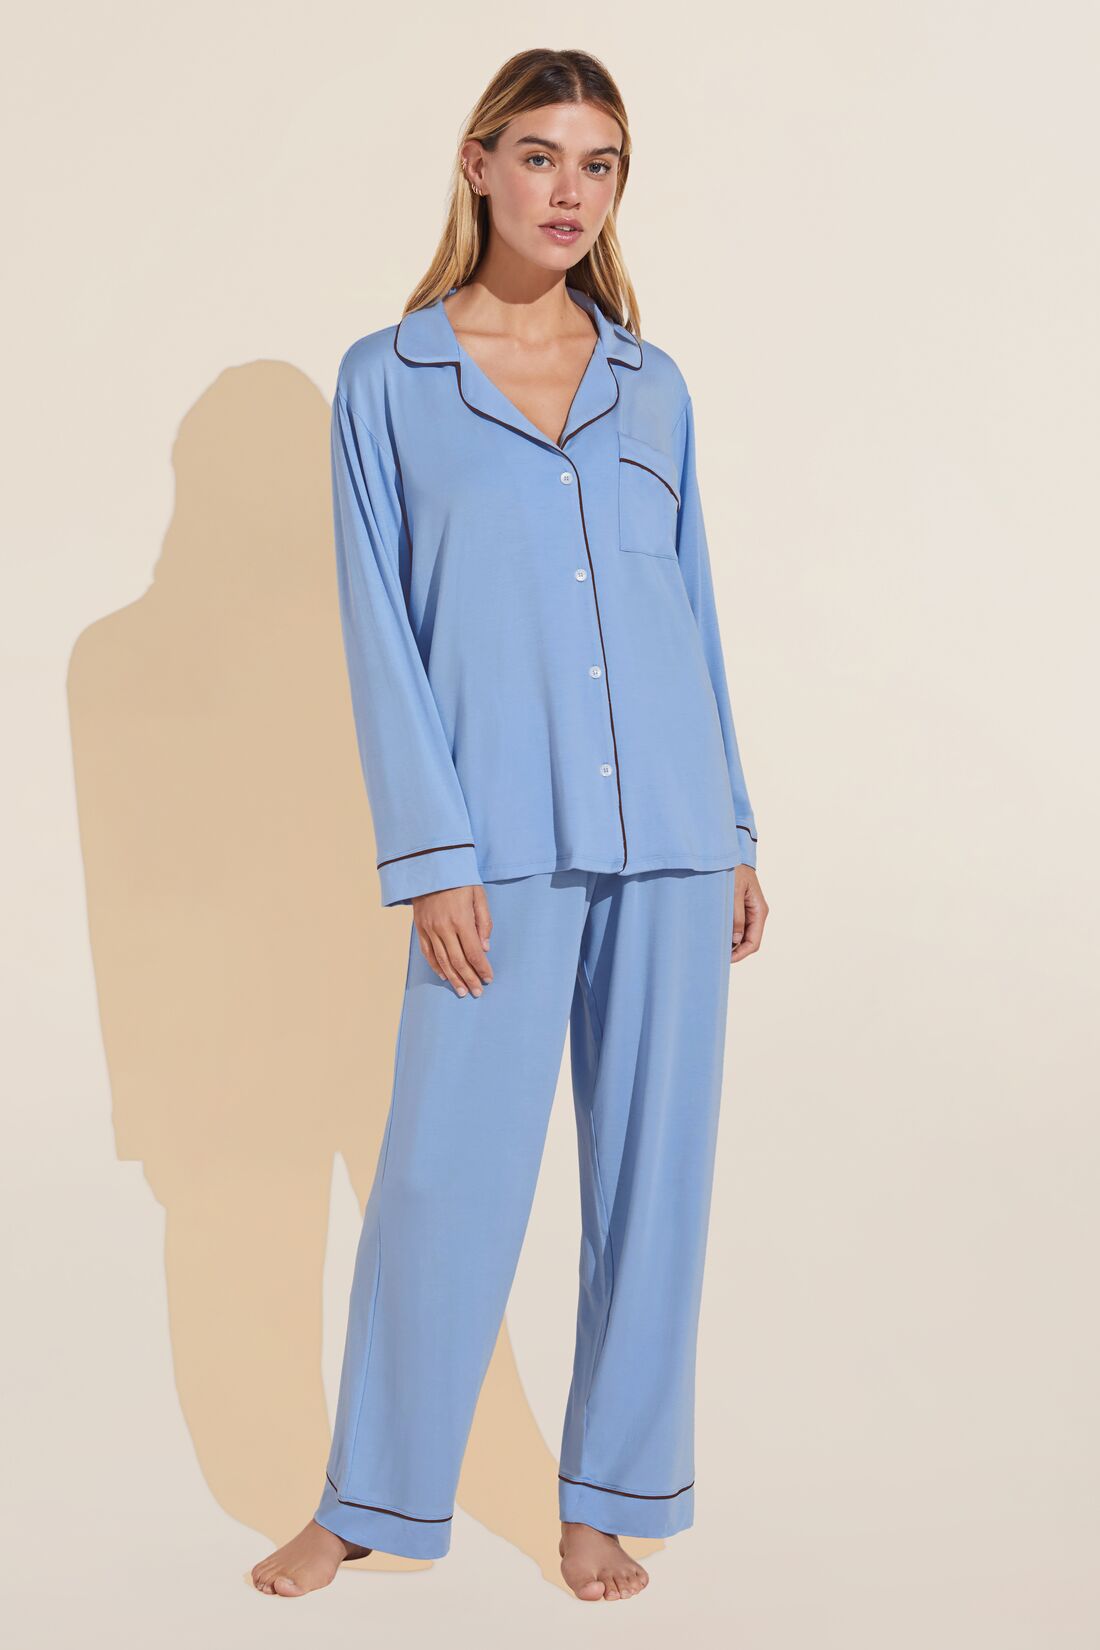 Women's Pajamas - Eberjey